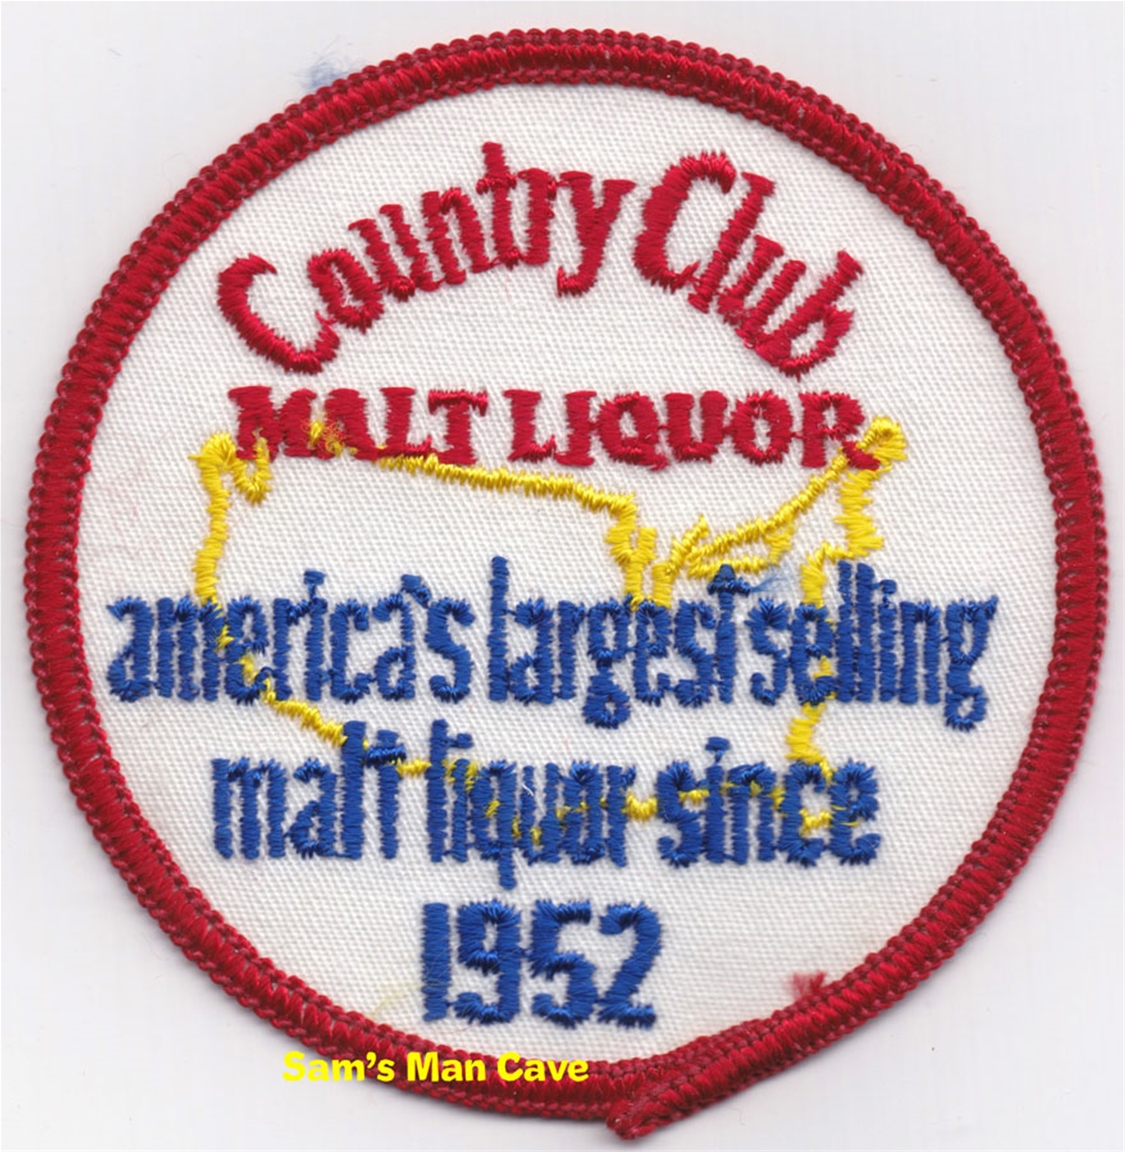 Country Club Malt Liquor Patch